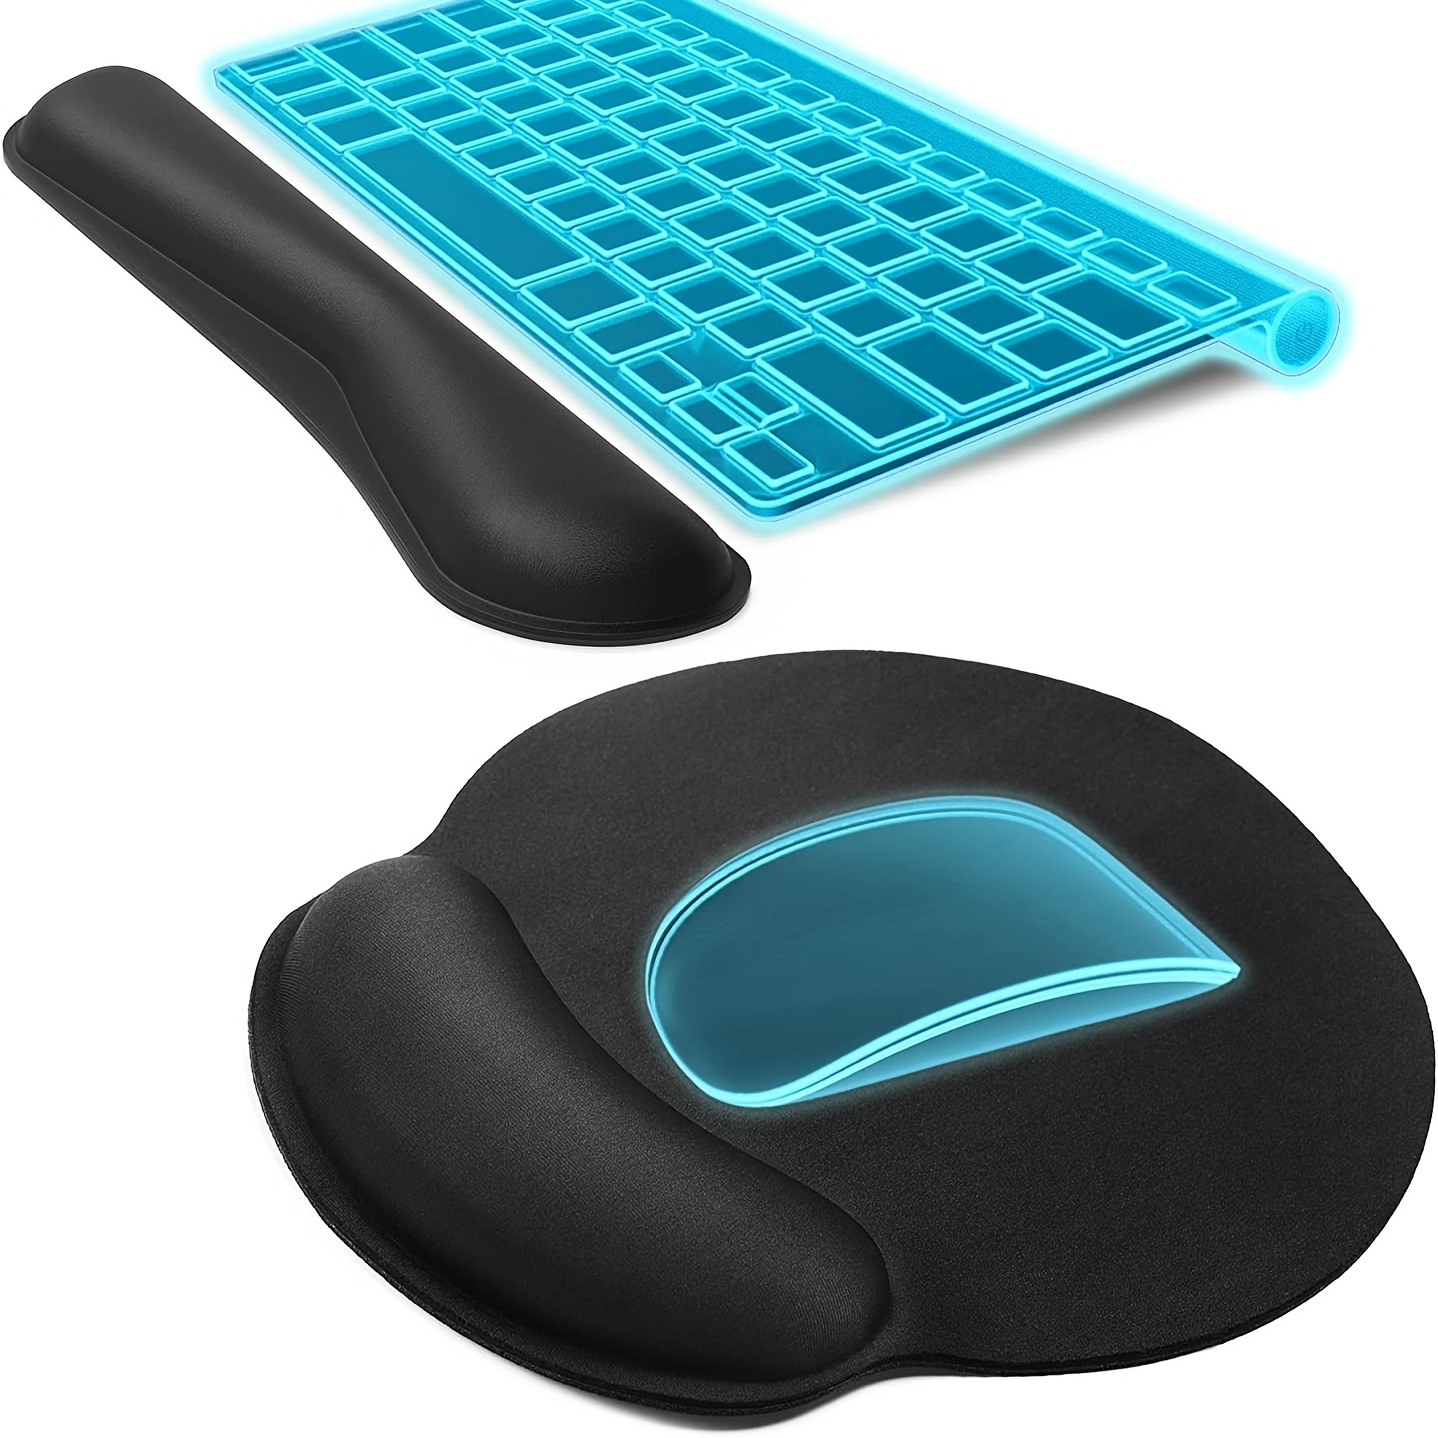 Tapis souris avec repose-poignet ergonomique noir/bleu